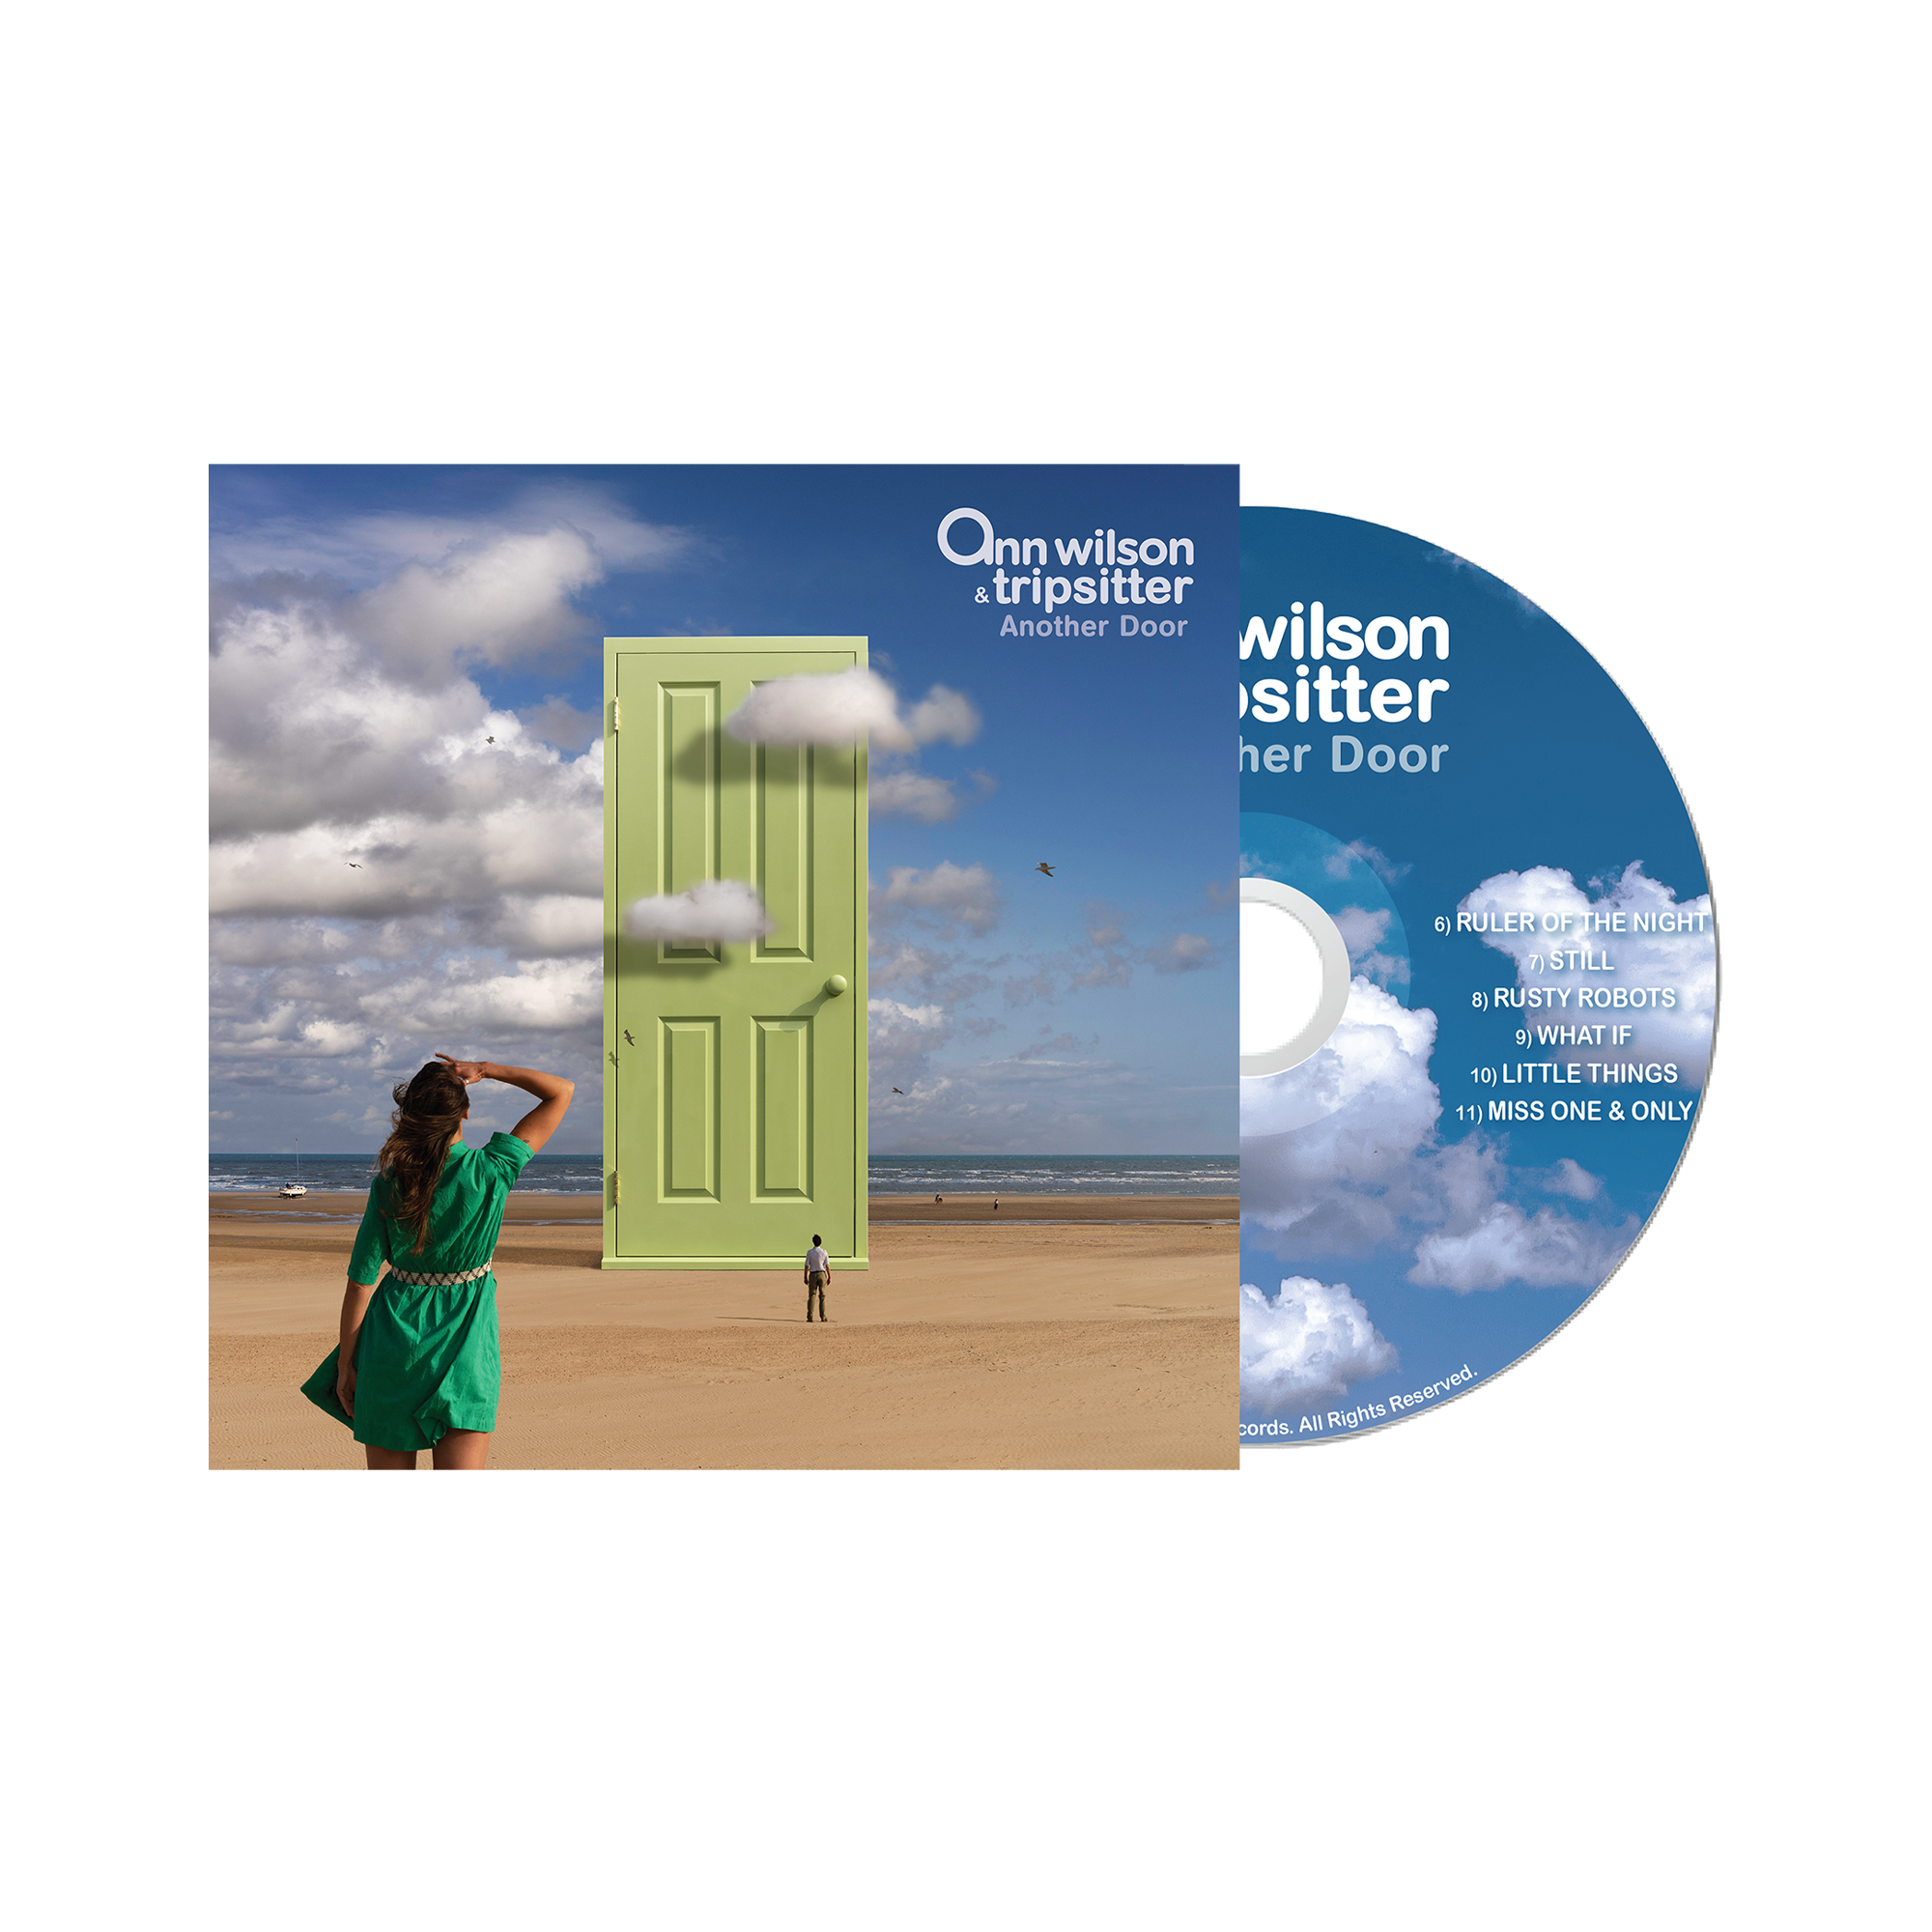 Ann Wilson & Tripsitter - Another Door CD